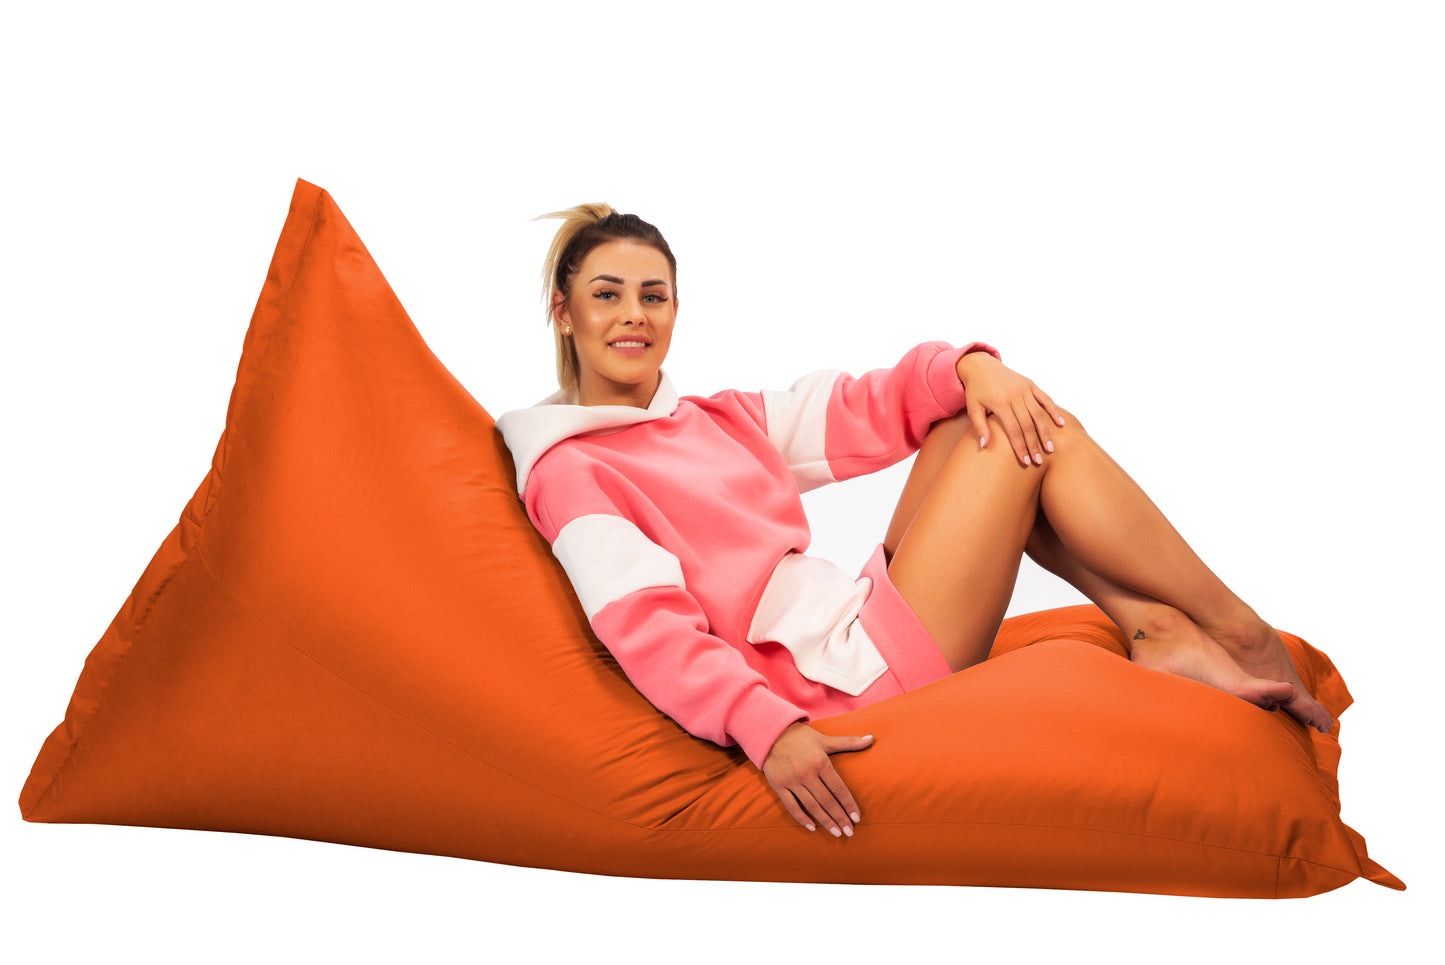 Sacco Beanbag Sacco di fagioli gigante Cuscino del sedile Cuscino da giardino Cuscino da pavimento per sdraiarsi e sedersi Poltrona relax impermeabile per bambini e adulti